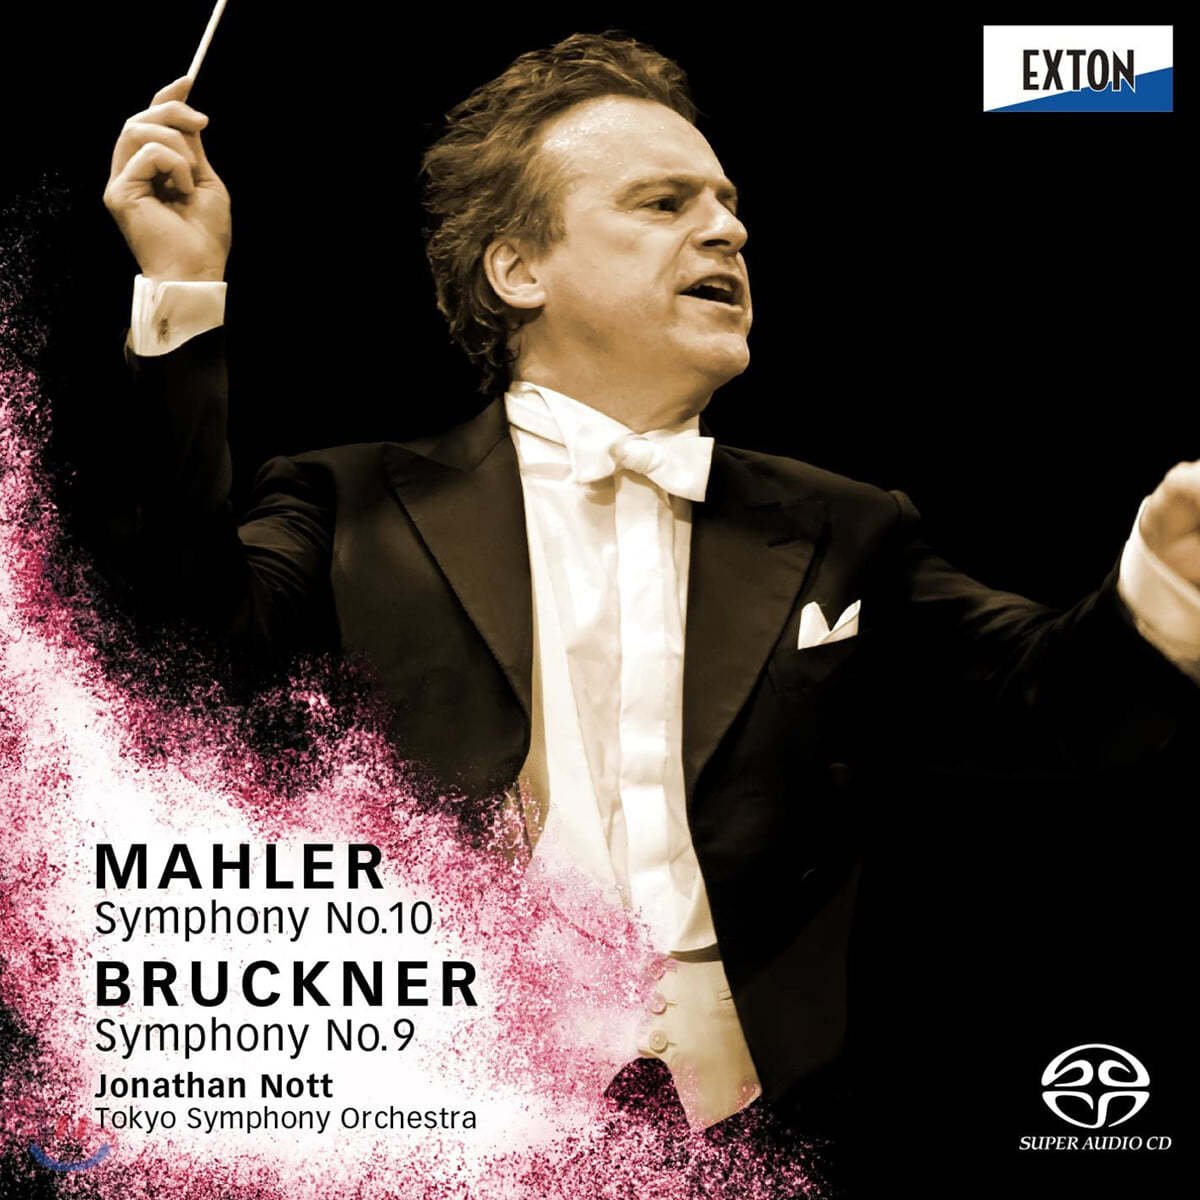 Jonathan Nott 말러: 교향곡 10번 / 브루크너: 교향곡 9번 (Mahler: Symphony No. 10 / Bruckner: Symphony No. 9)